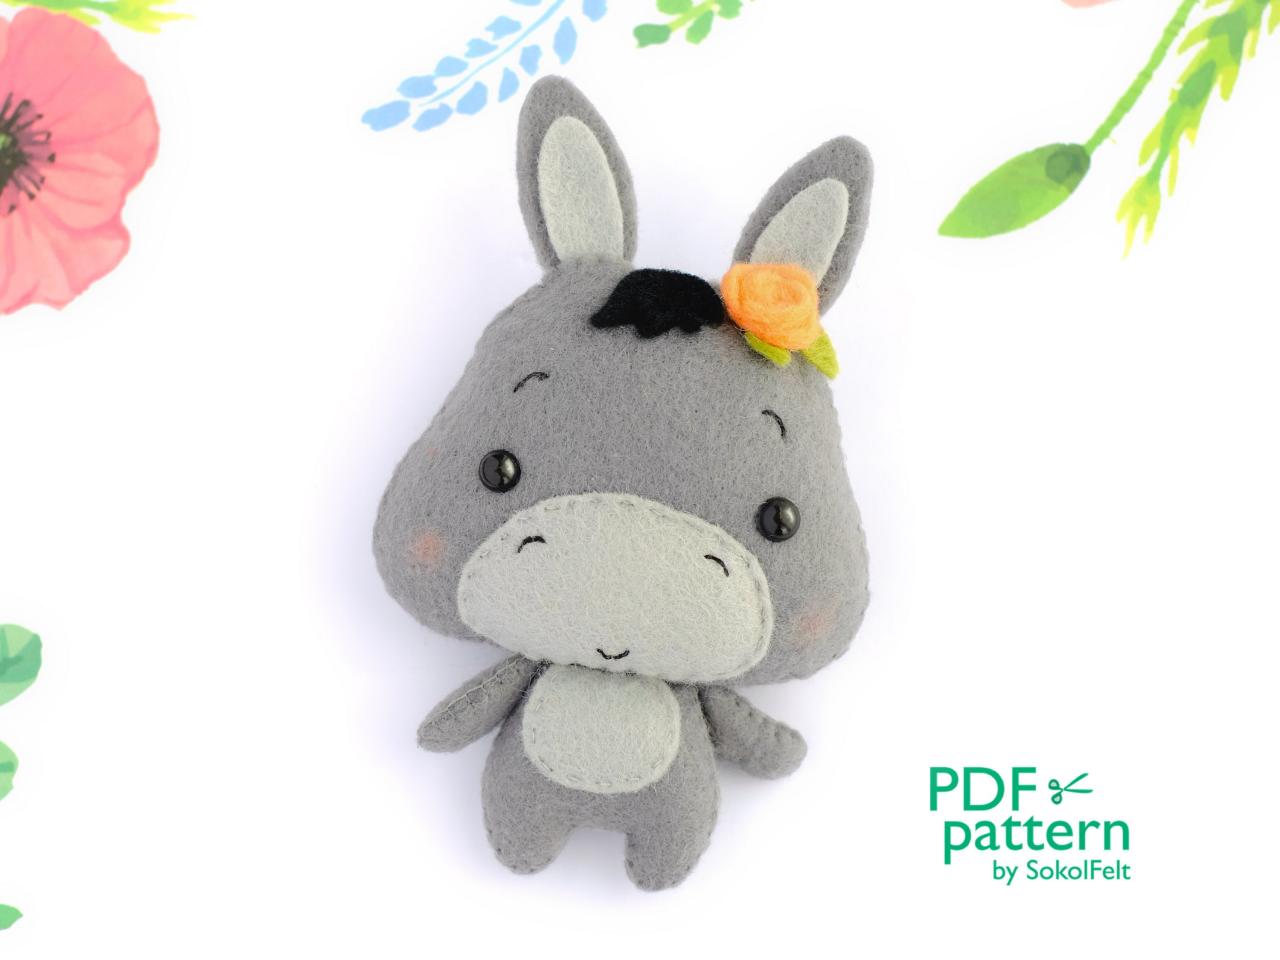 Felt Baby Donkey Toy Sewing Pdf Pattern, Cute Farm Animal, Felt Burro Digital Instant Download Tutorial, Baby Crib Mobile Toy